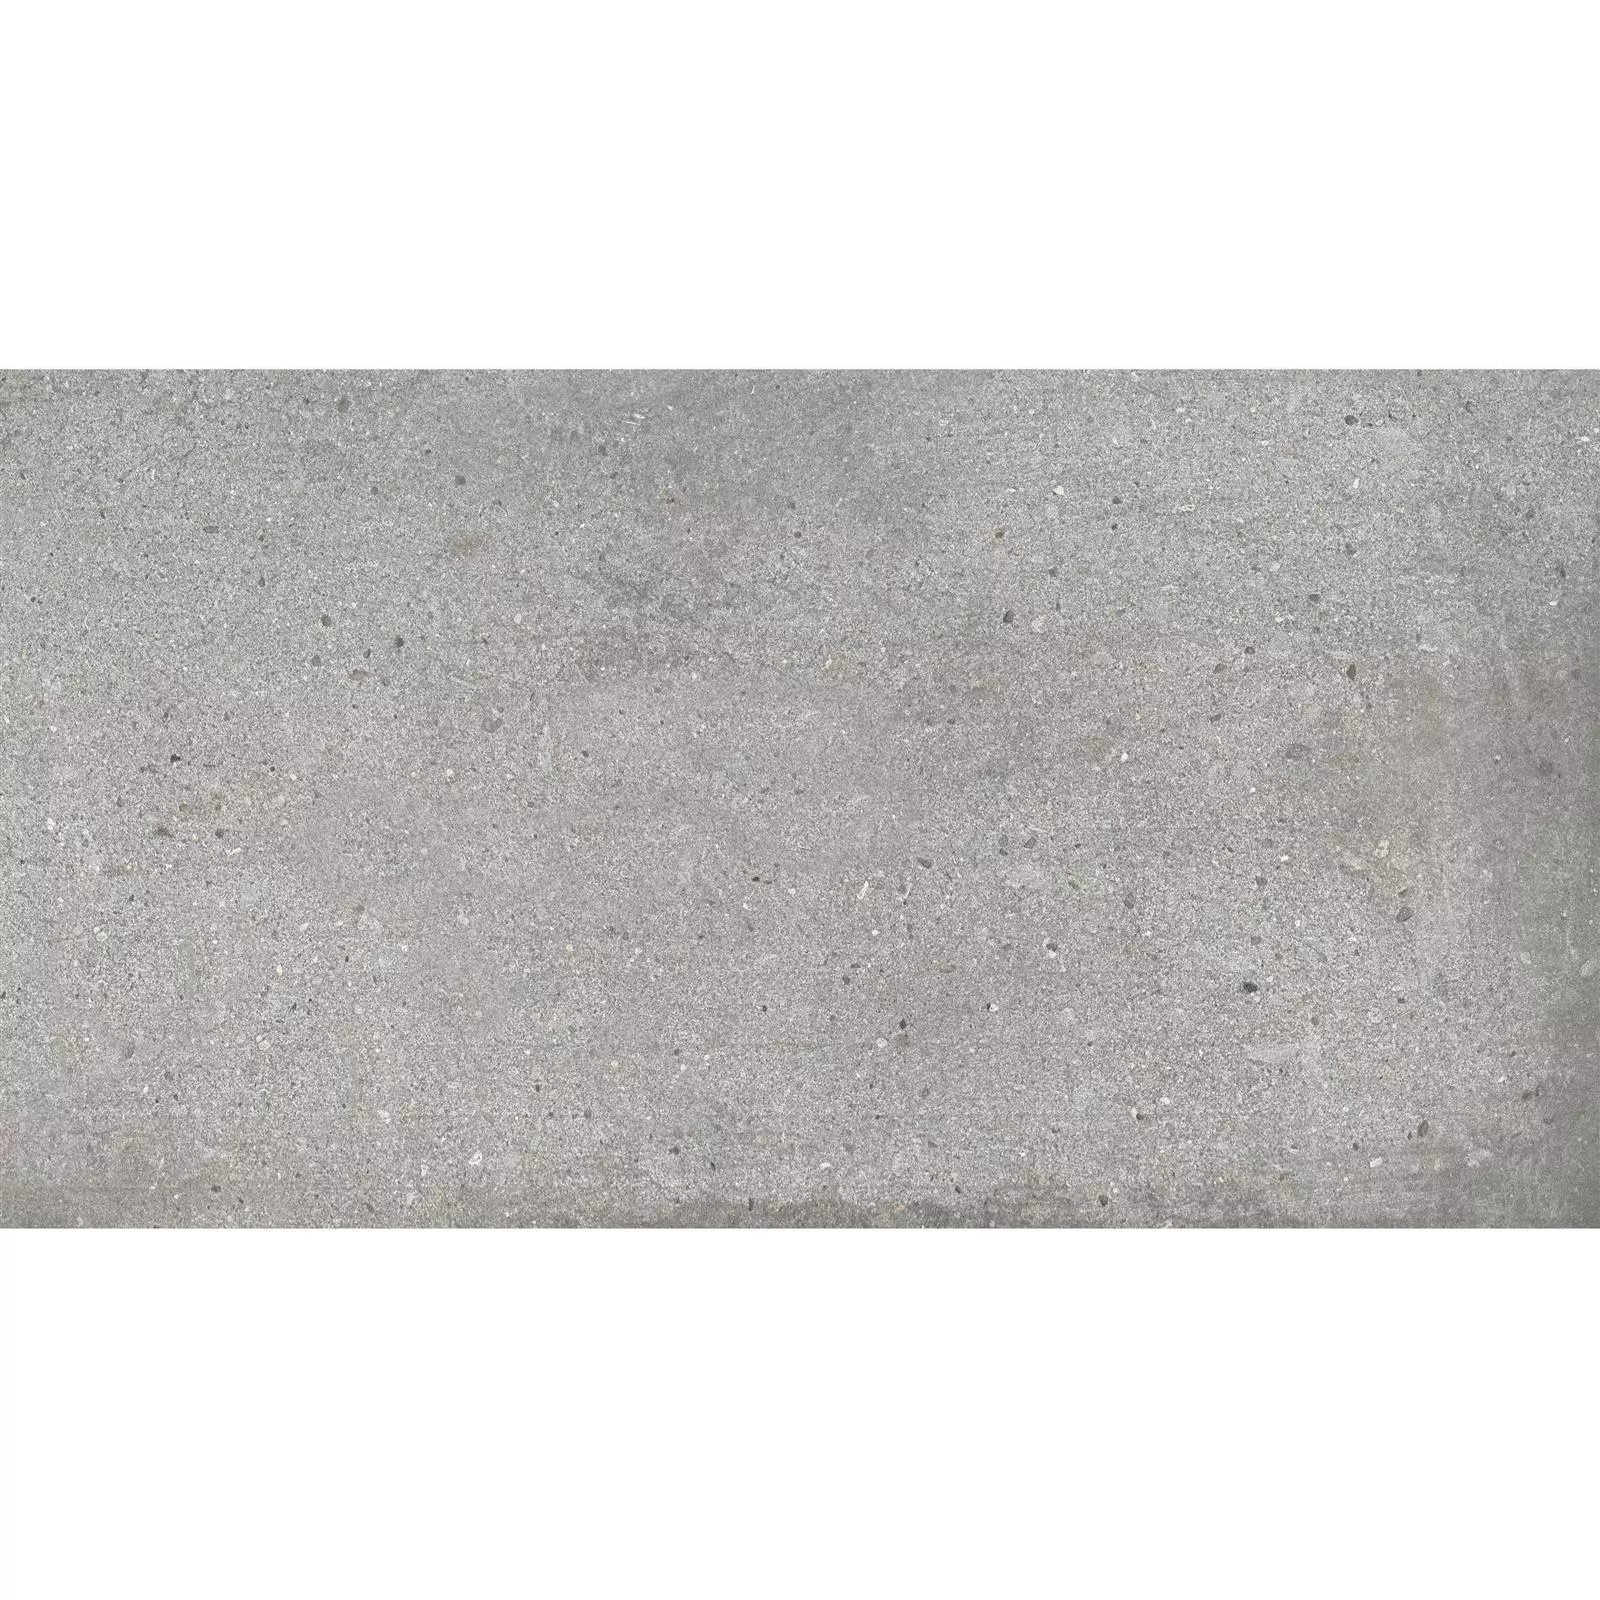 Próbka Płytki Podłogowe Freeland Kamień Optyka R10/B Szary 30x60cm